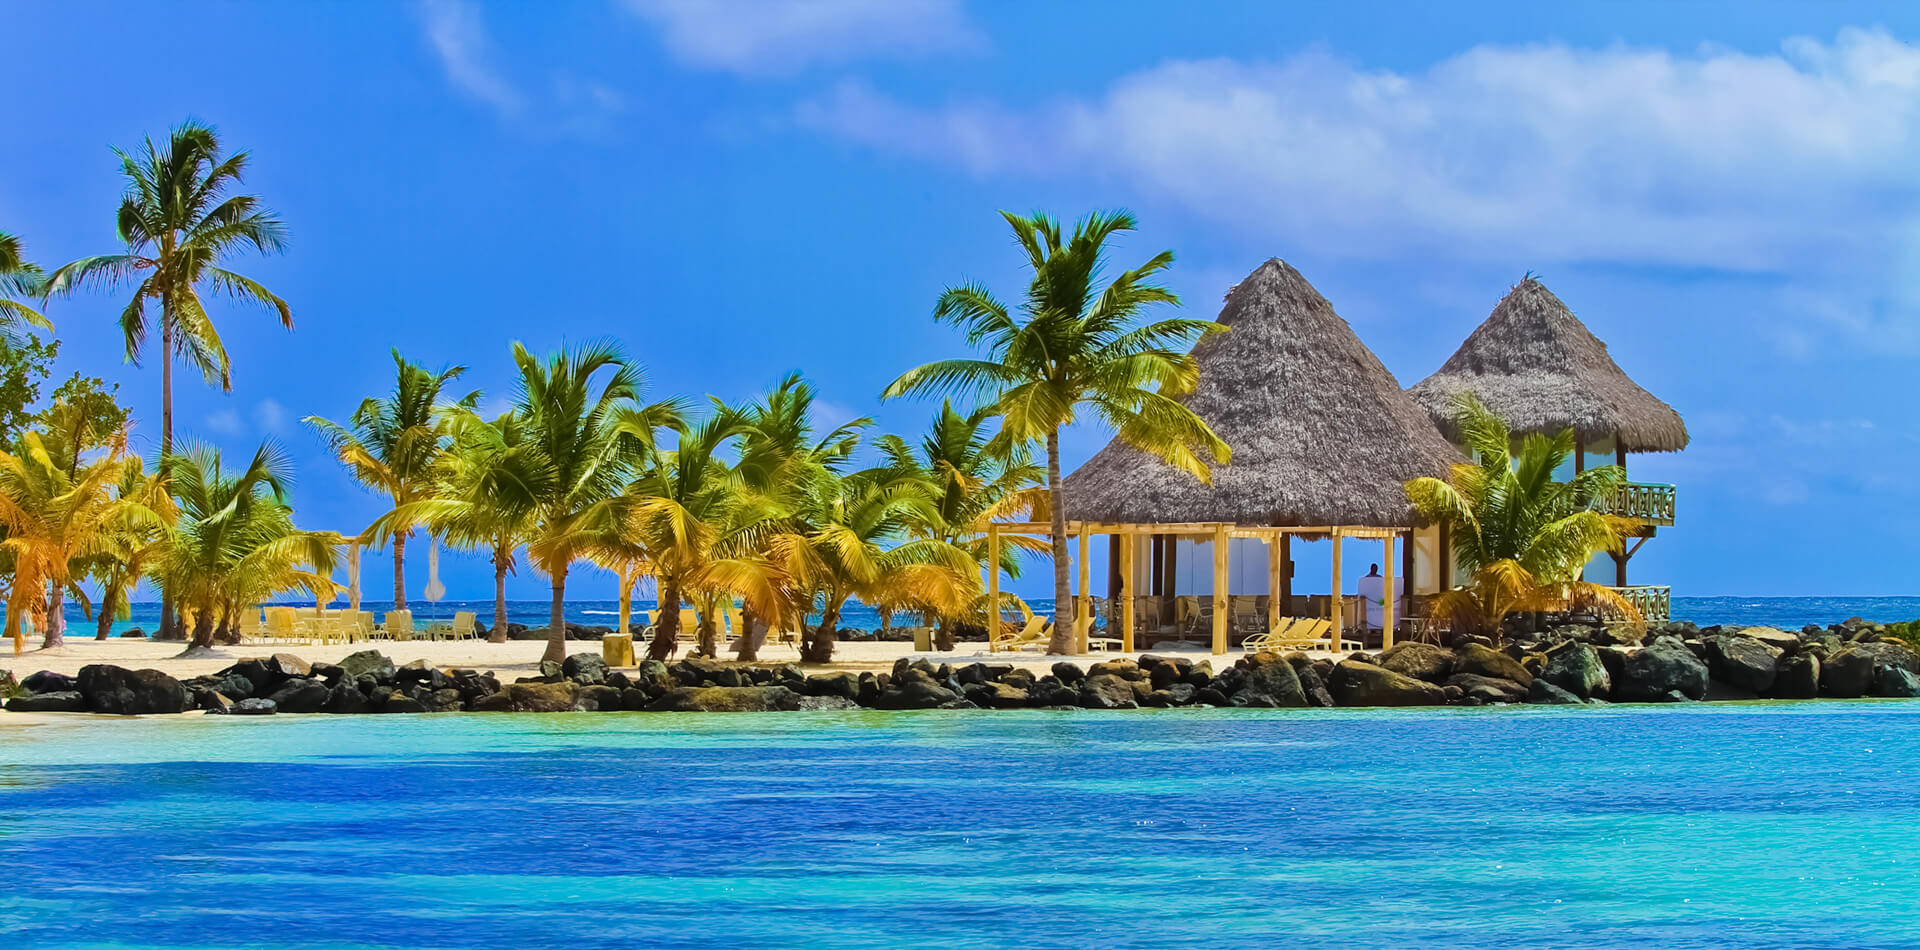 Лучшие предложения и недорогие путевки в Доминикану от Gold Travel